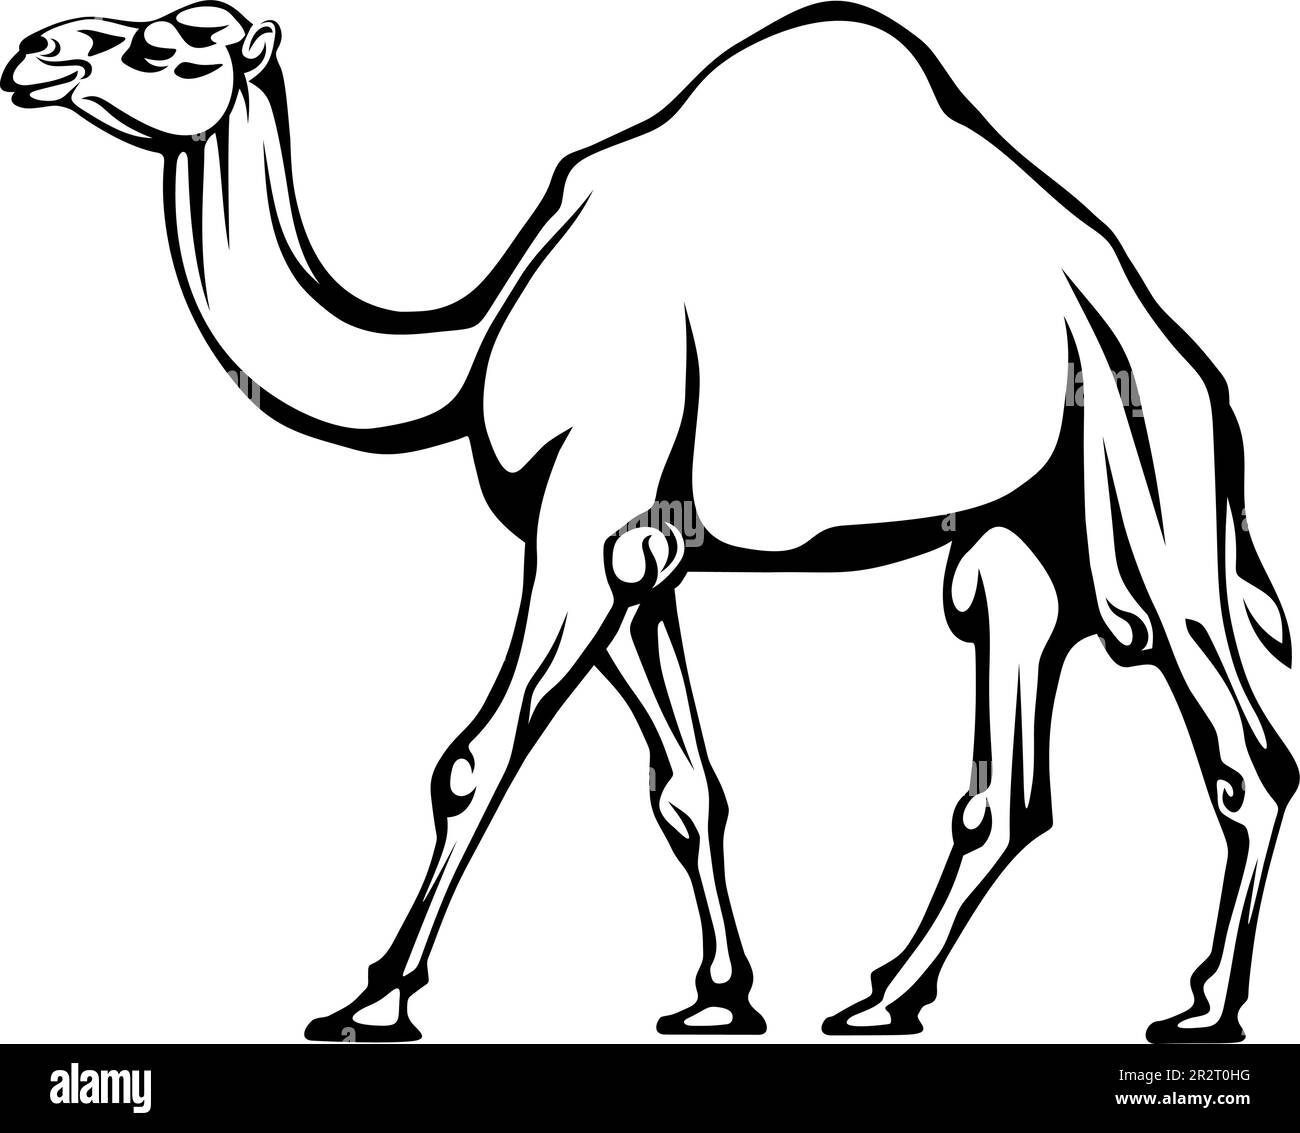 Camello. Ilustración en blanco y negro de un camello caminando aislado sobre un fondo blanco. Dibujo de contorno. Ilustración vectorial Ilustración del Vector